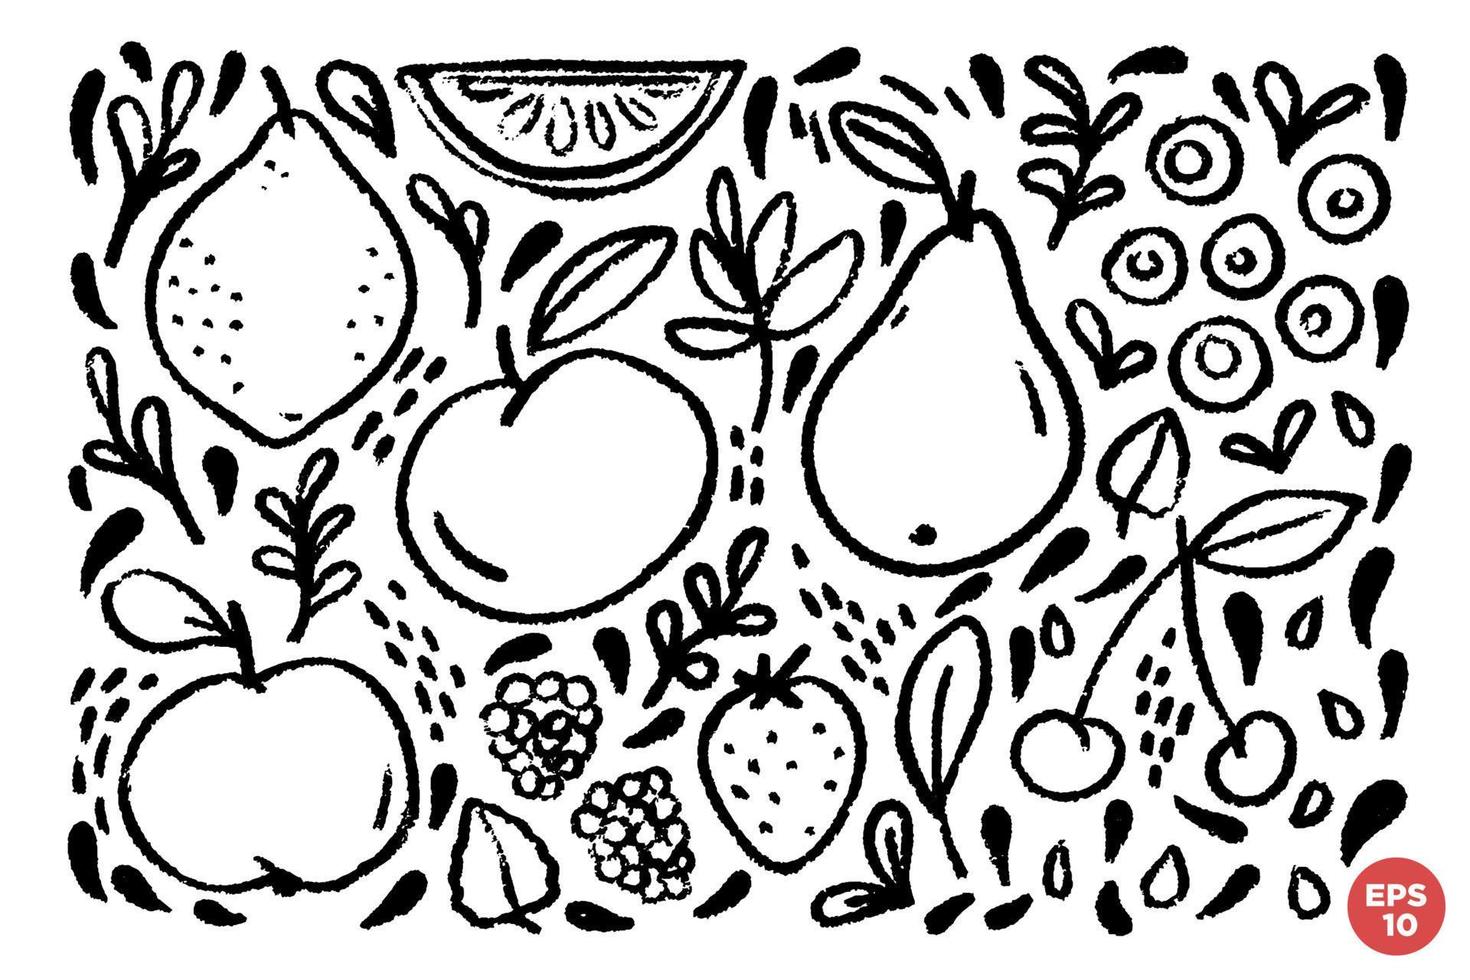 Hand gezeichnet grungy Früchte und Beeren Satz. Grafik linear Essen Bilder. Vektor naiv einer Farbe Cliparts mit Früchte, Beeren, Blätter und Samen.